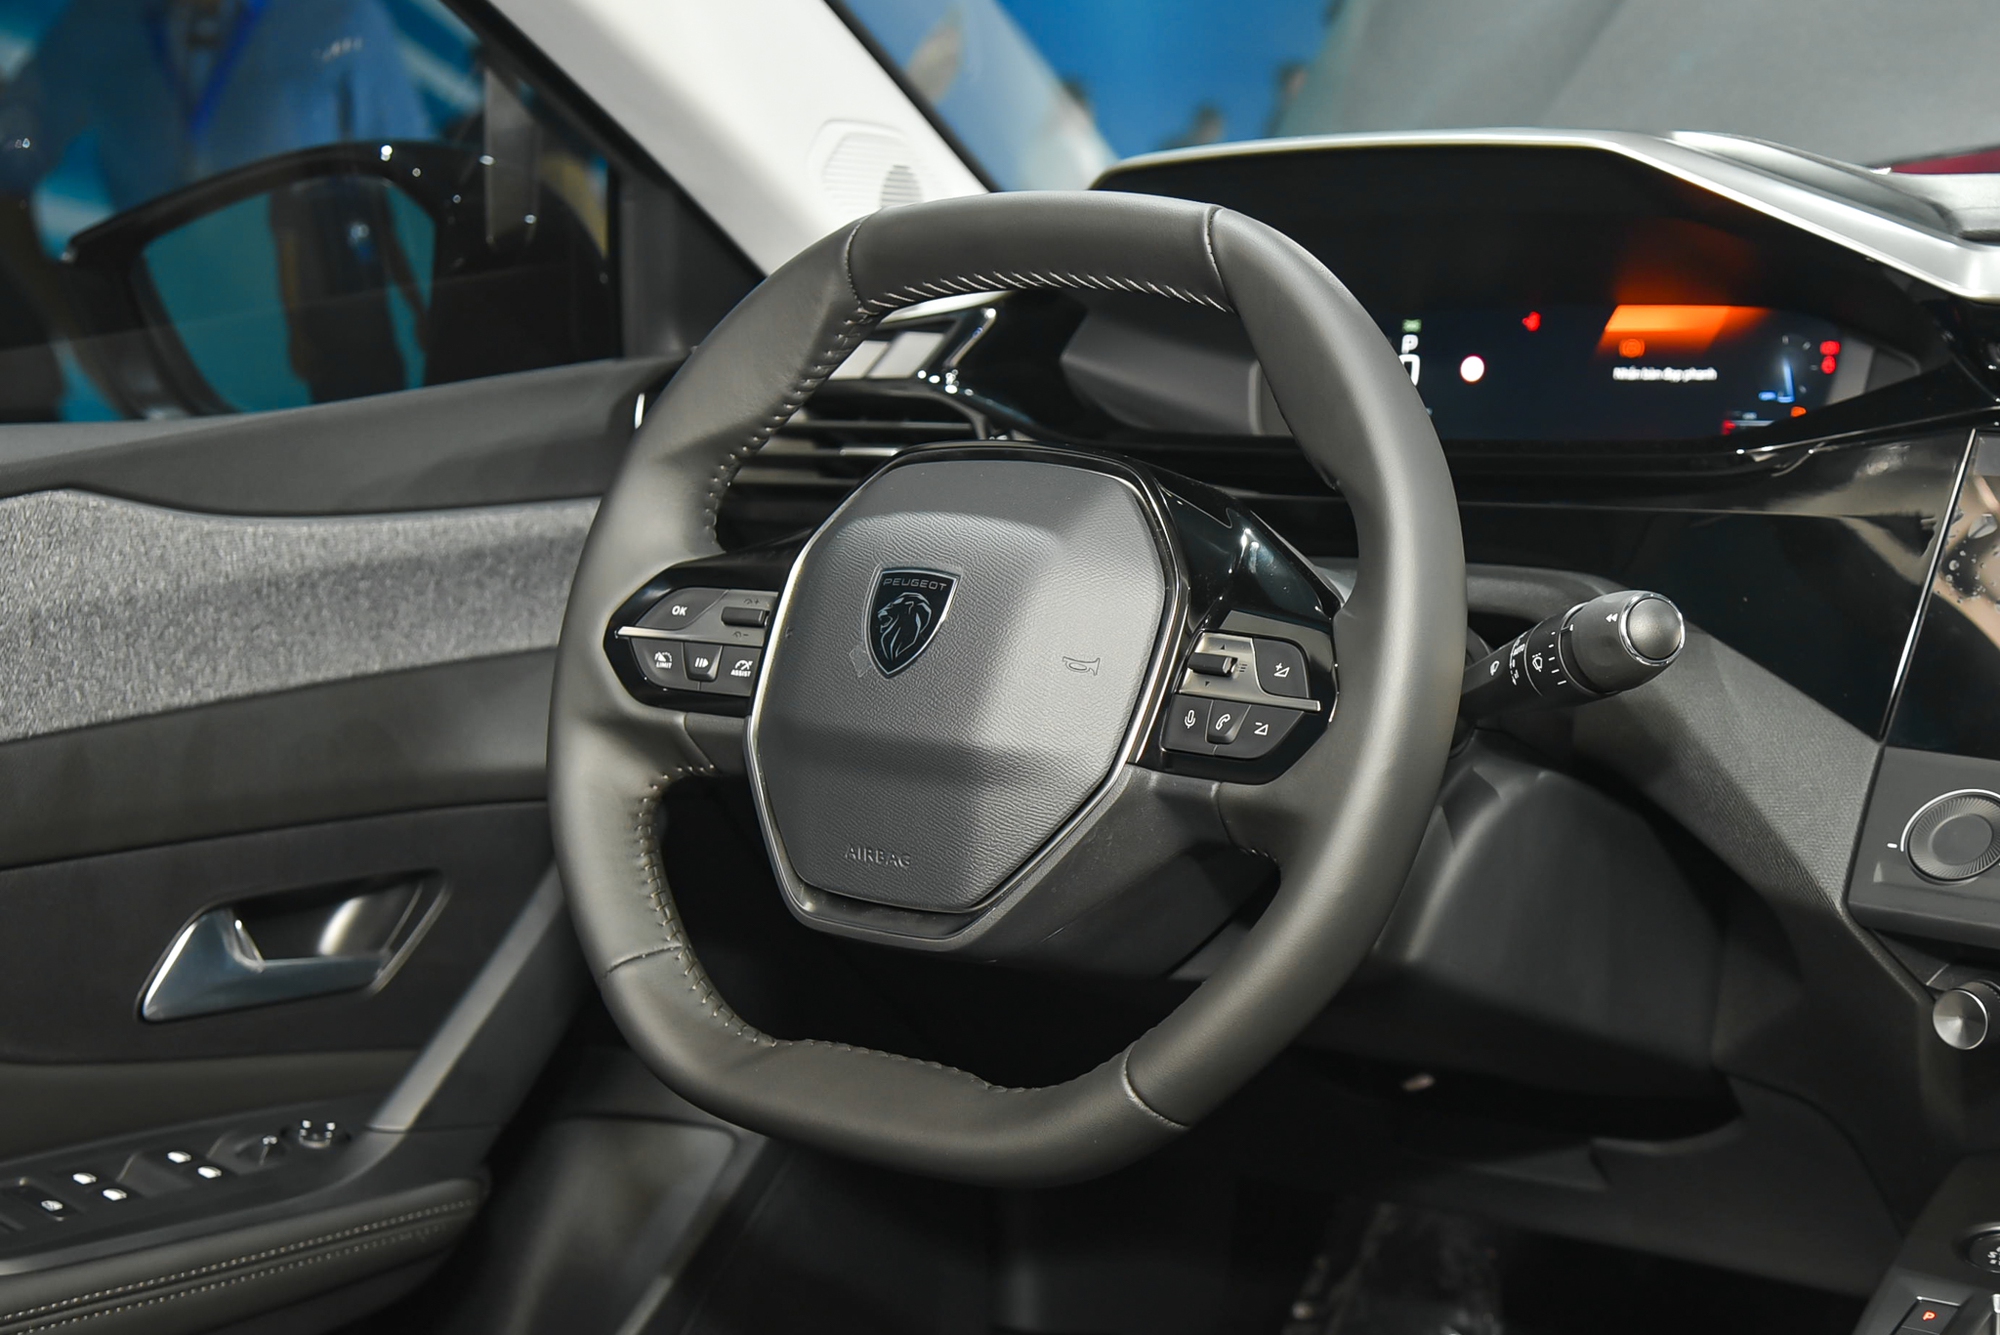 Chi tiết Peugeot 408 bản tiêu chuẩn giá 999 triệu đồng: Rẻ hơn bản cao nhất 250 triệu, vẫn có hỗ trợ người lái - Ảnh 11.